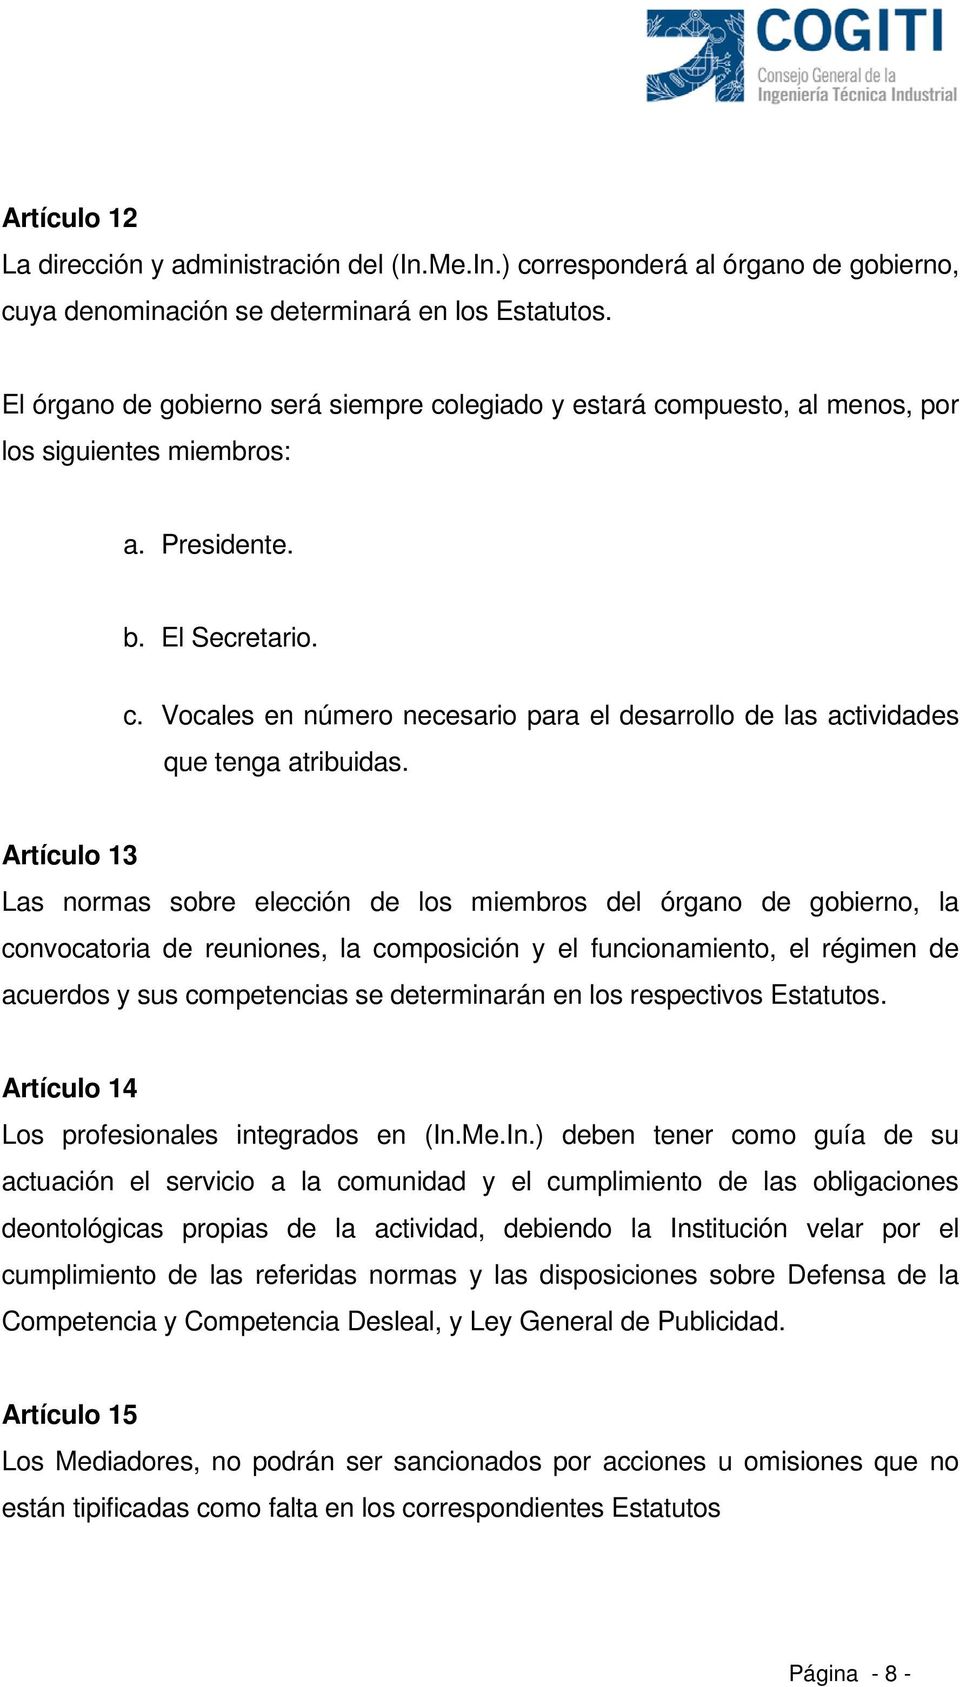 Artículo 13 Las normas sobre elección de los miembros del órgano de gobierno, la convocatoria de reuniones, la composición y el funcionamiento, el régimen de acuerdos y sus competencias se